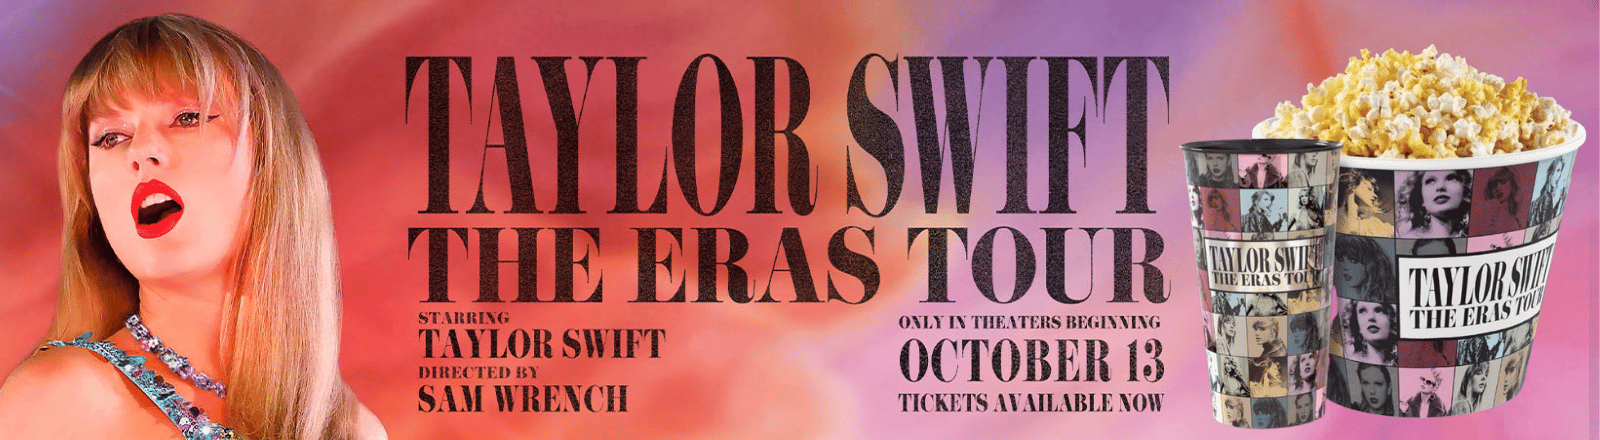 Taylor Swift The Eras Tour Concert Film